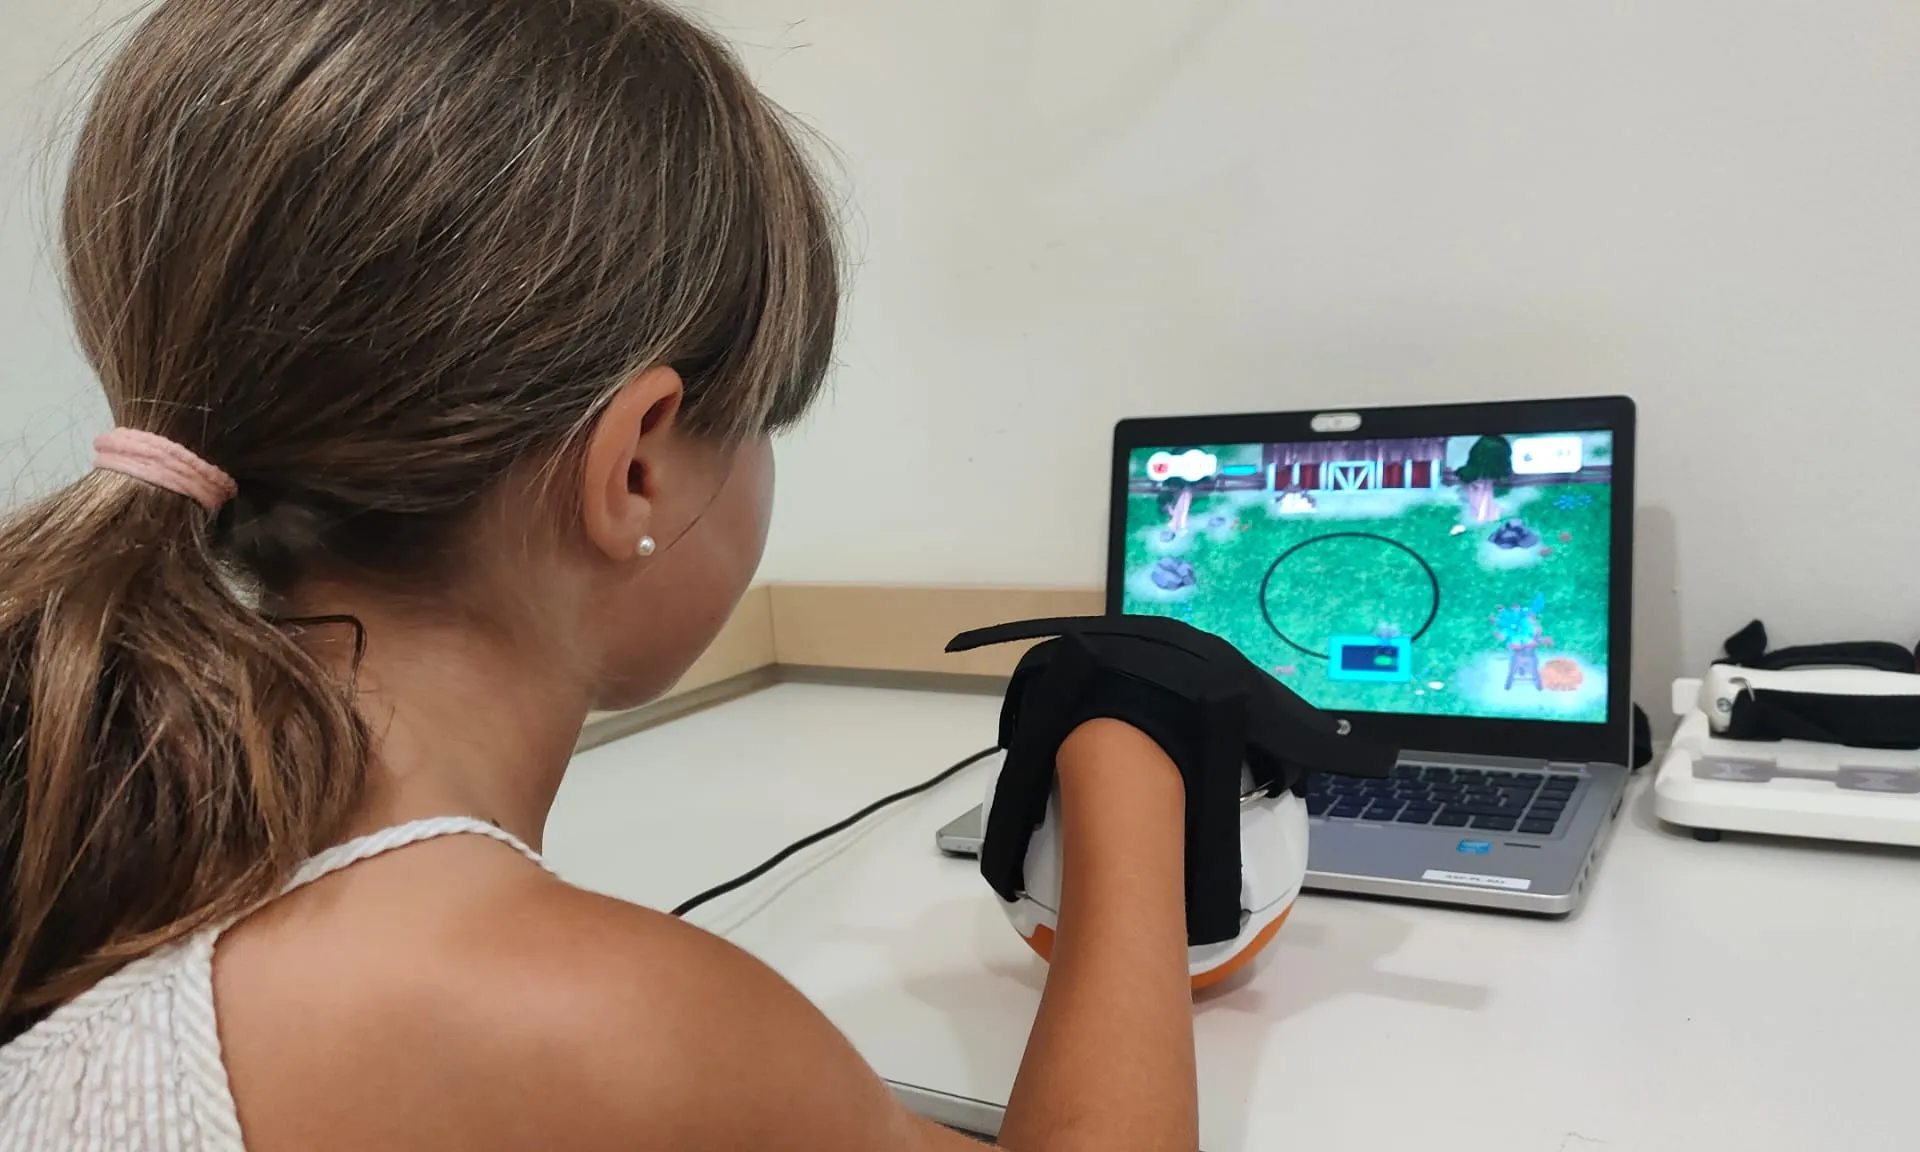 El projecte és pioner en incorporar tecnologies basades en la robòtica i els sensors als tractaments, a través de jocs interactius de realitat virtual.